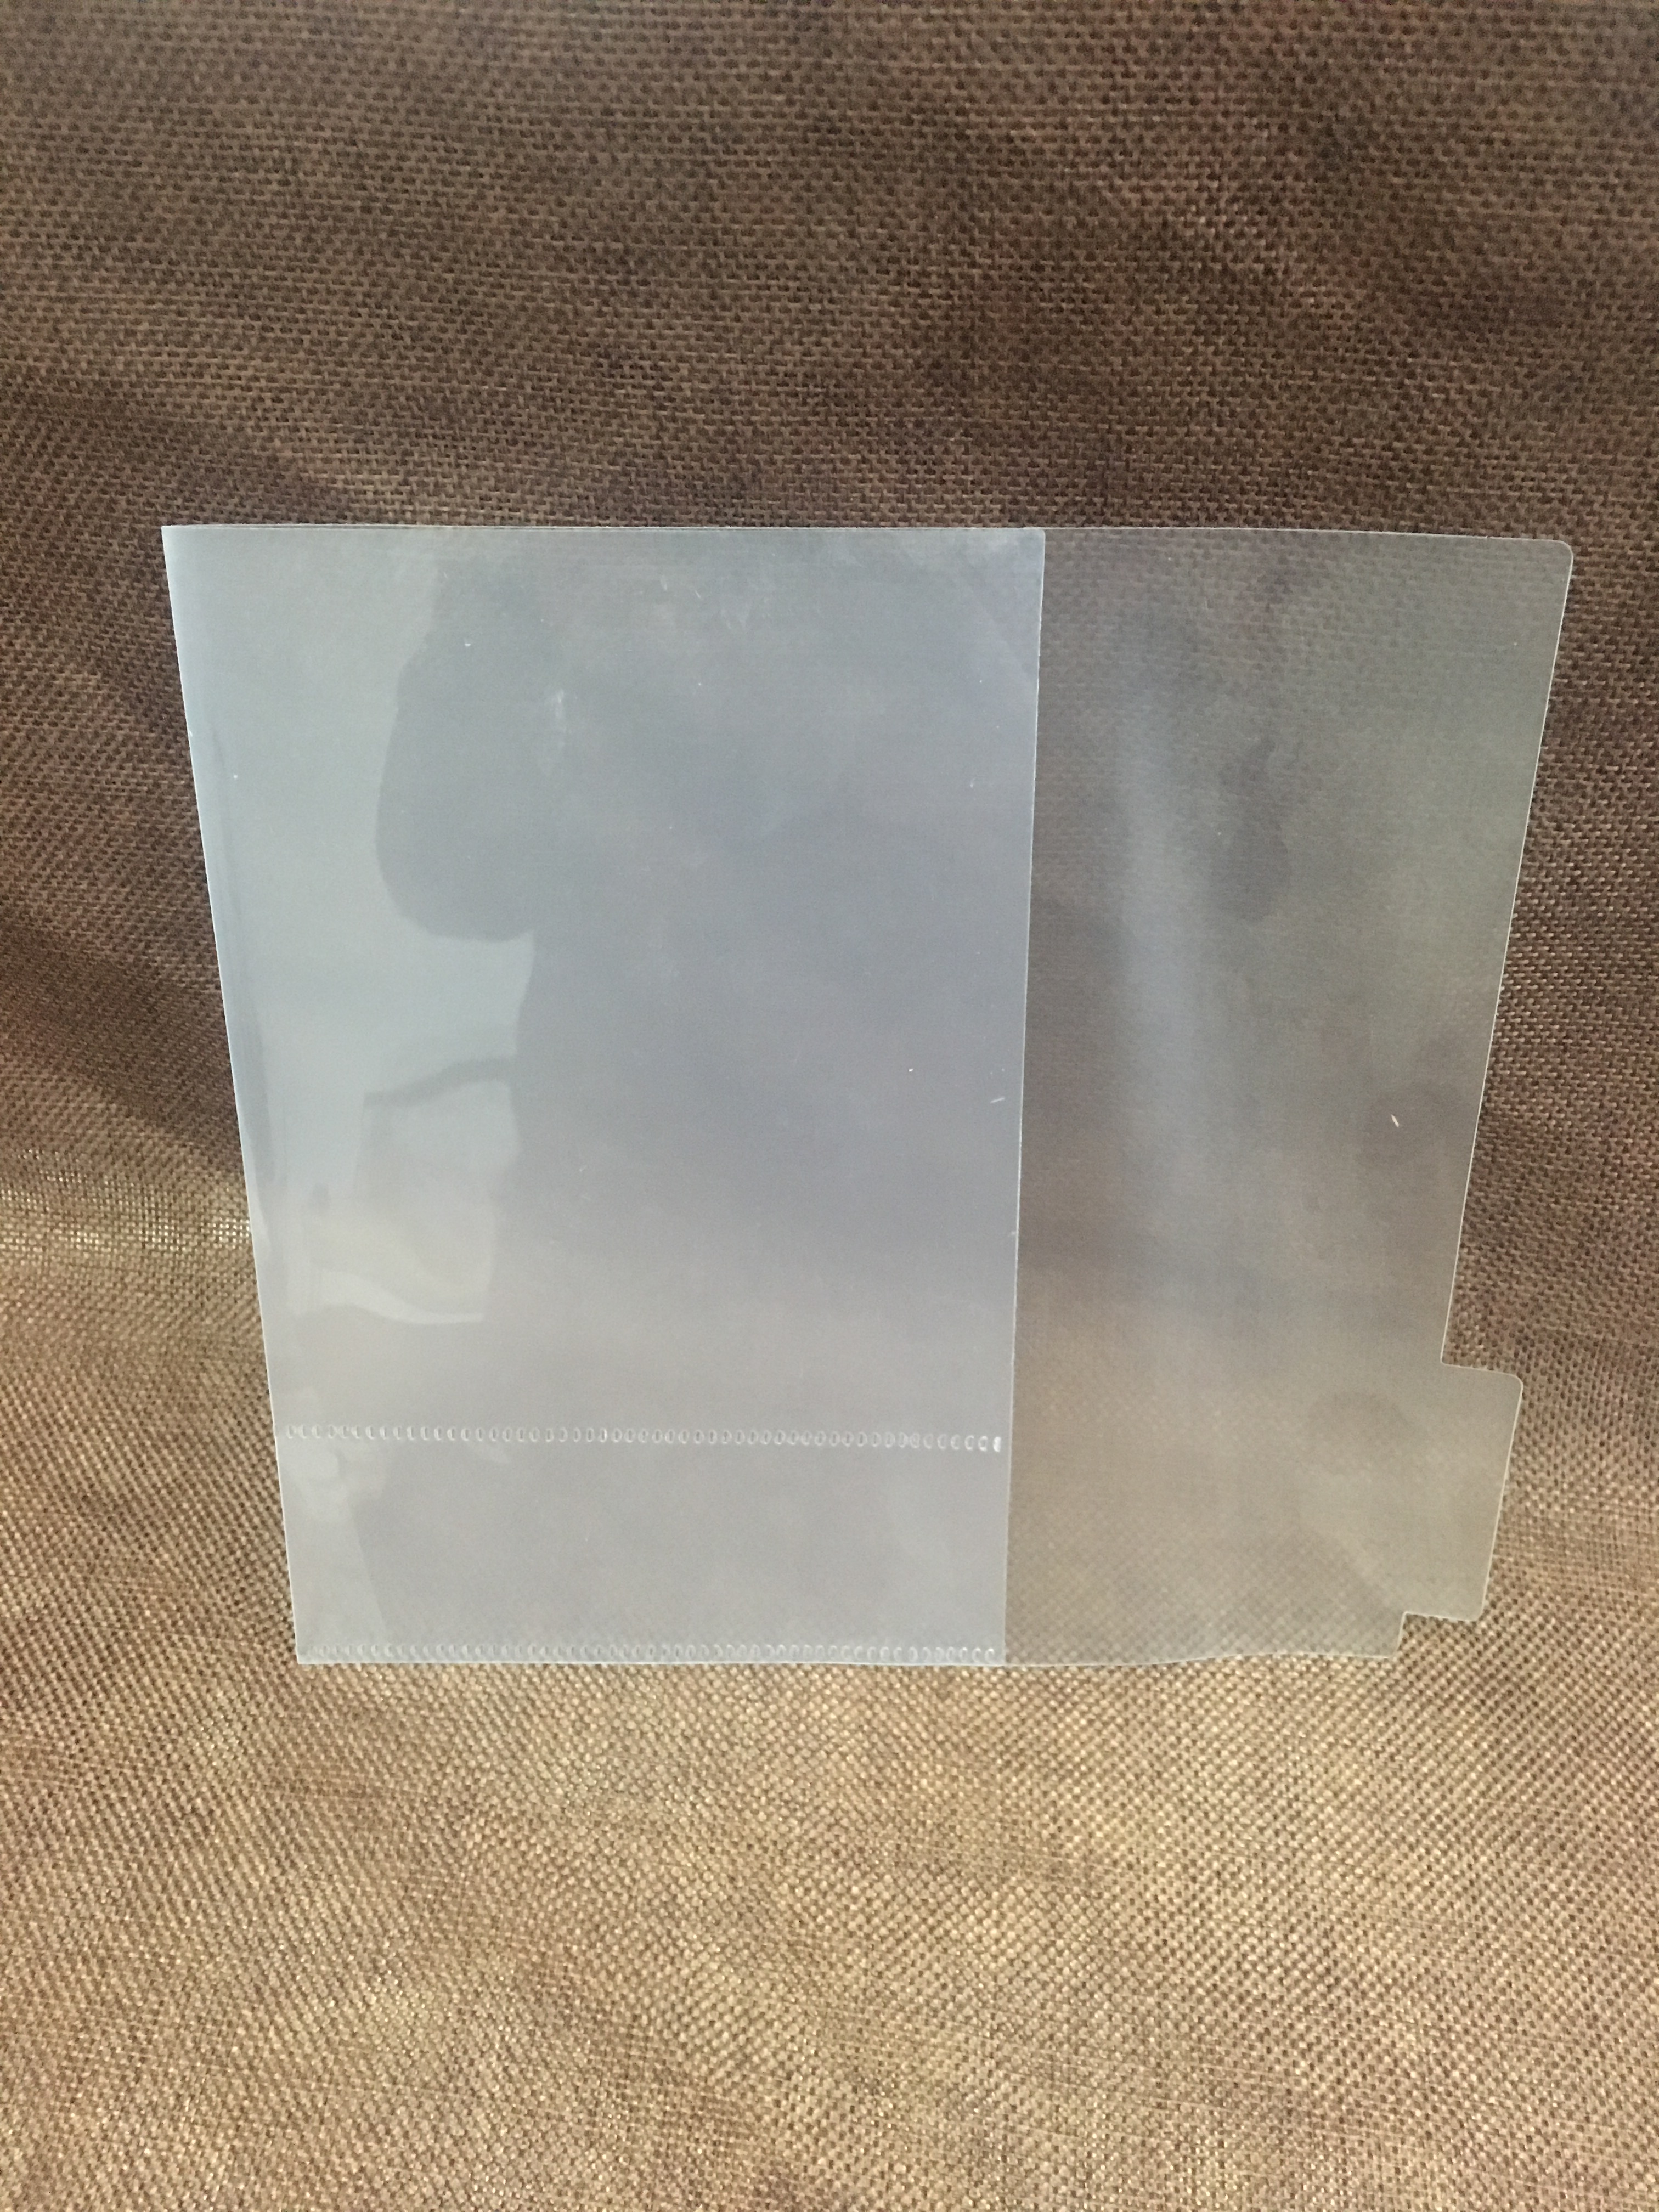 PP磨砂塑料片书套加工A4异形可定制透明磨砂片均可订制工厂直销价格优惠图片